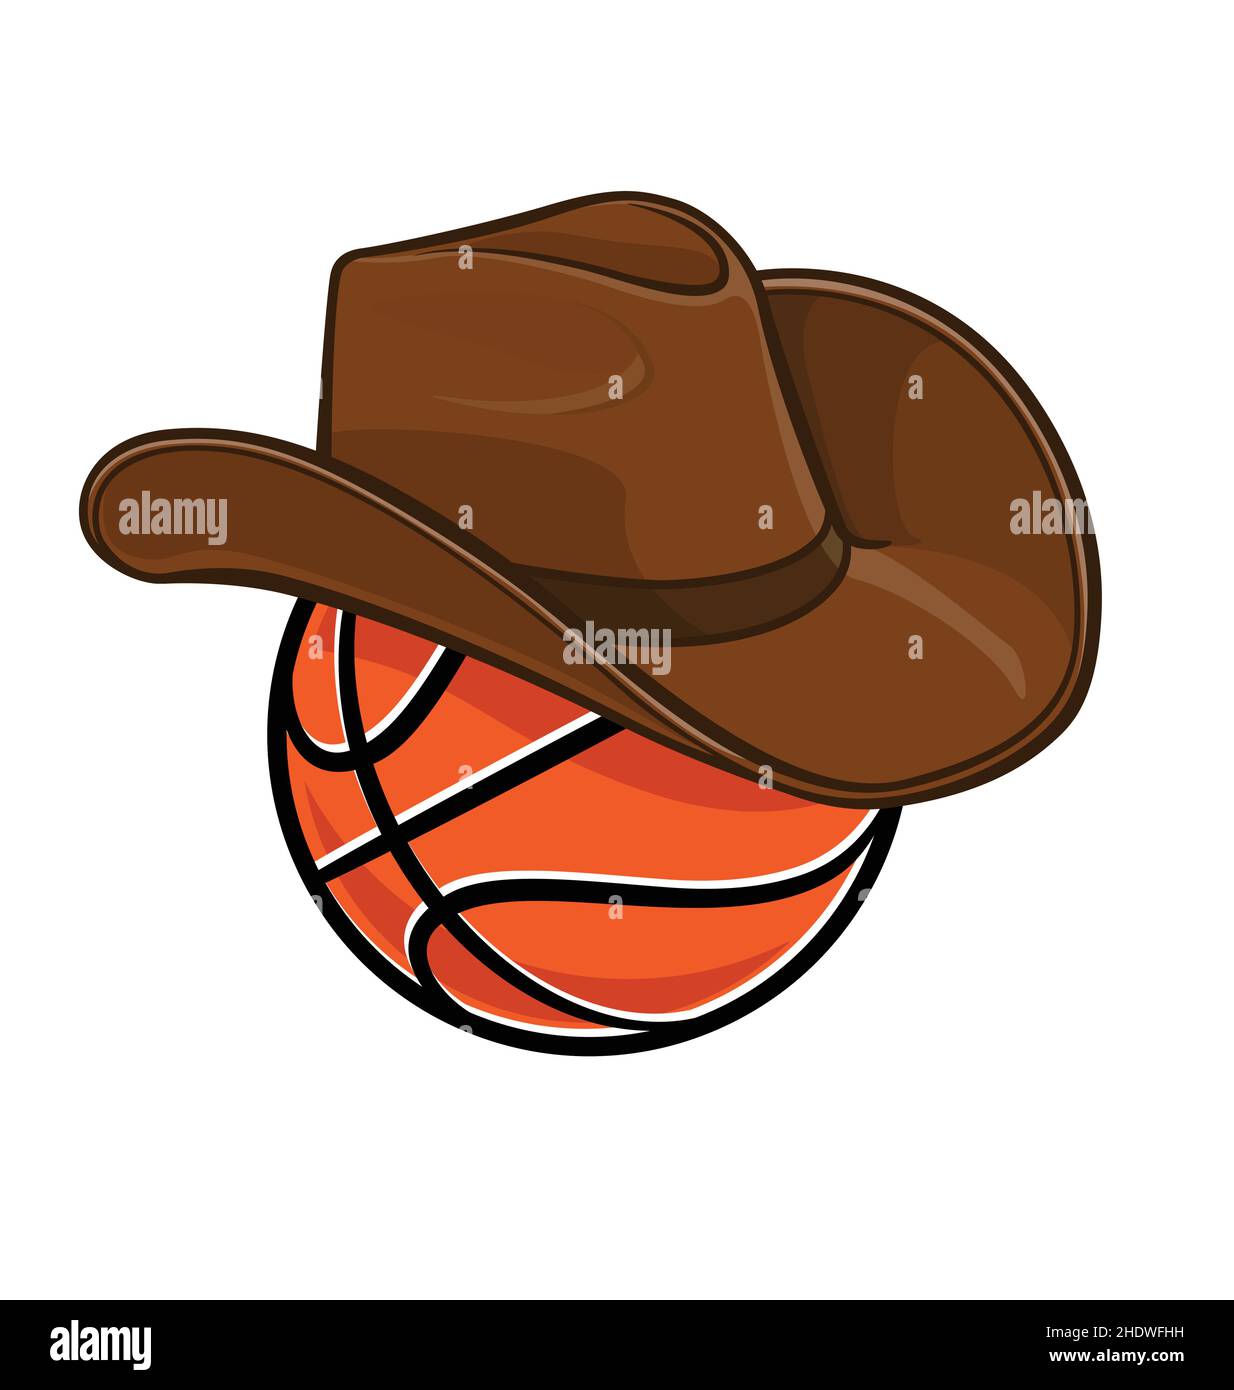 dessin animé orange stylisé basket-ball avec bandes noires portant cowboy stetson chapeau tshirt graphique design illustration vectorielle isolée sur fond blanc Illustration de Vecteur